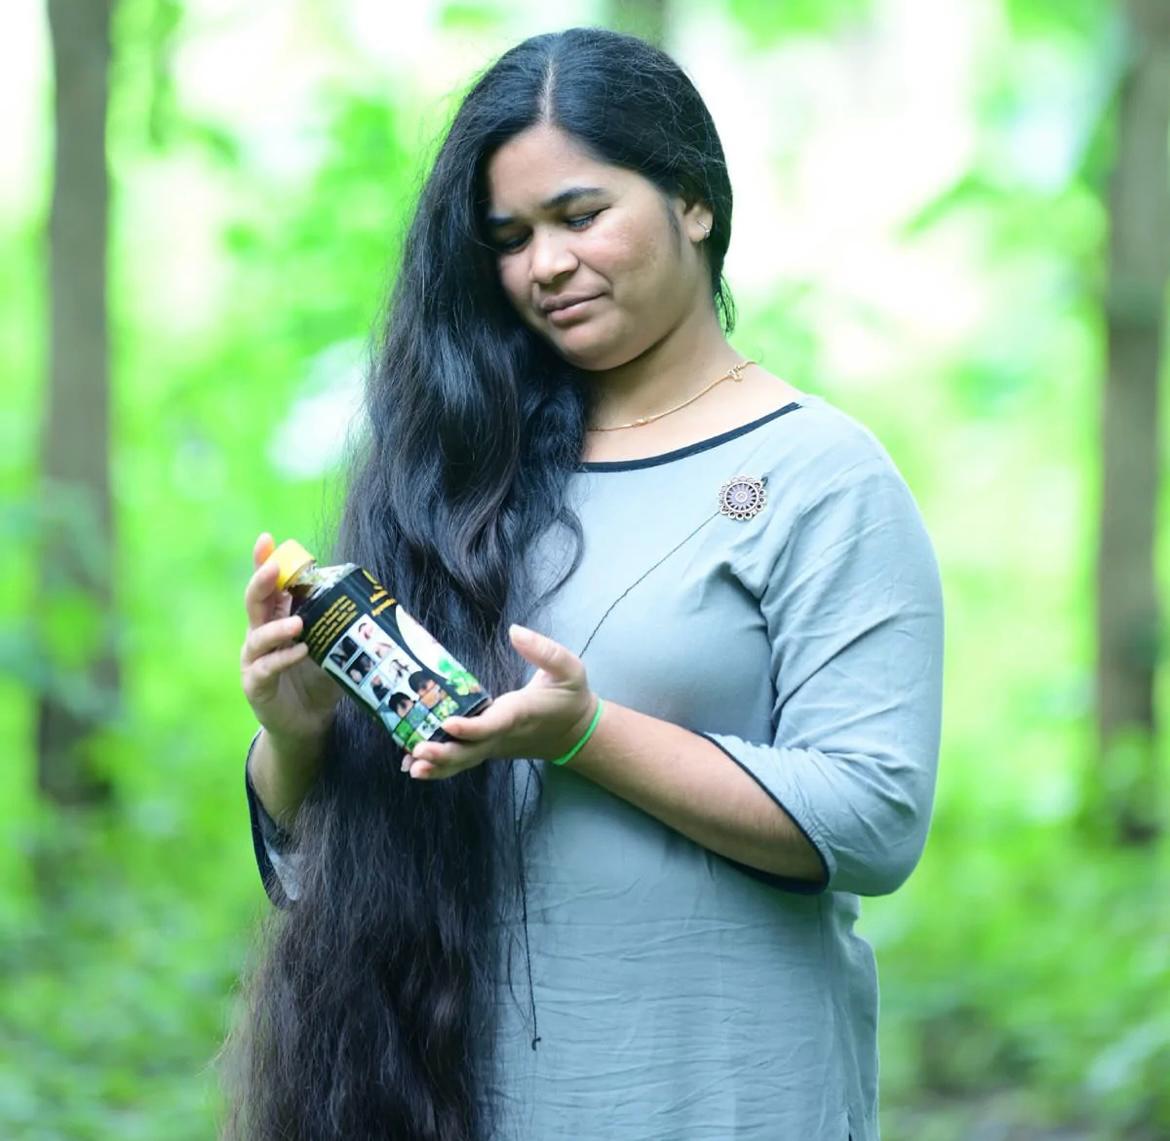 Adivasi Neelambari Herbal Hair Oil